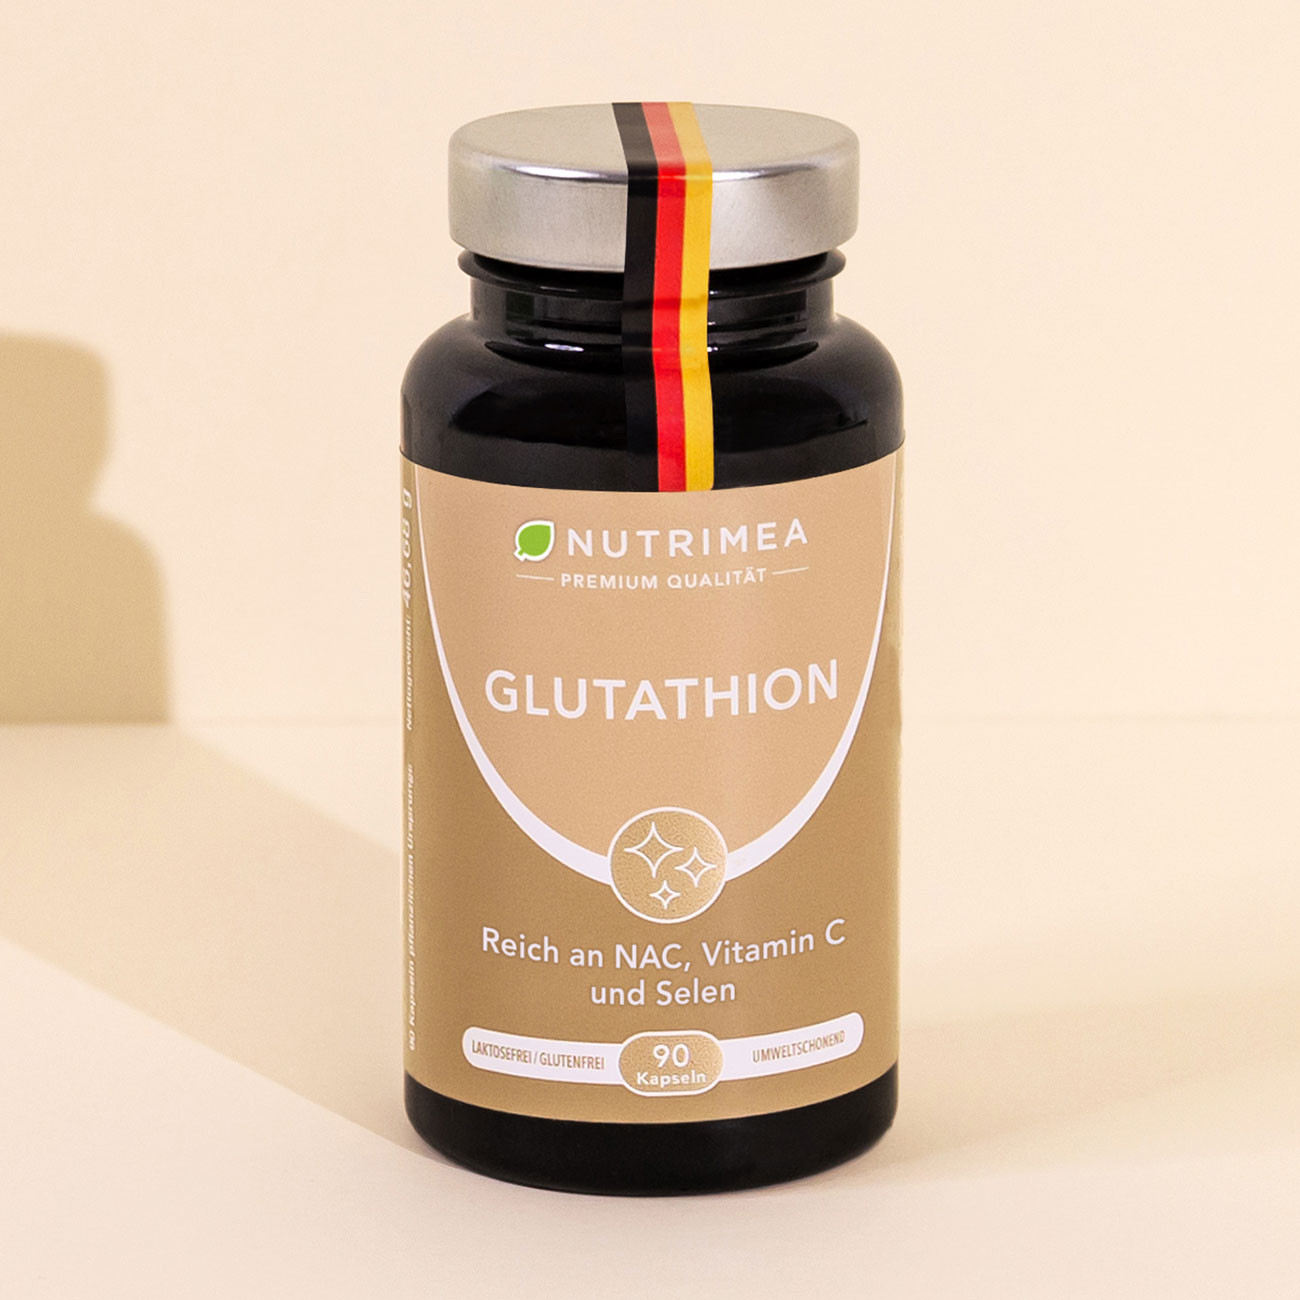 Bild der Verpackung des Supplements Glutathion